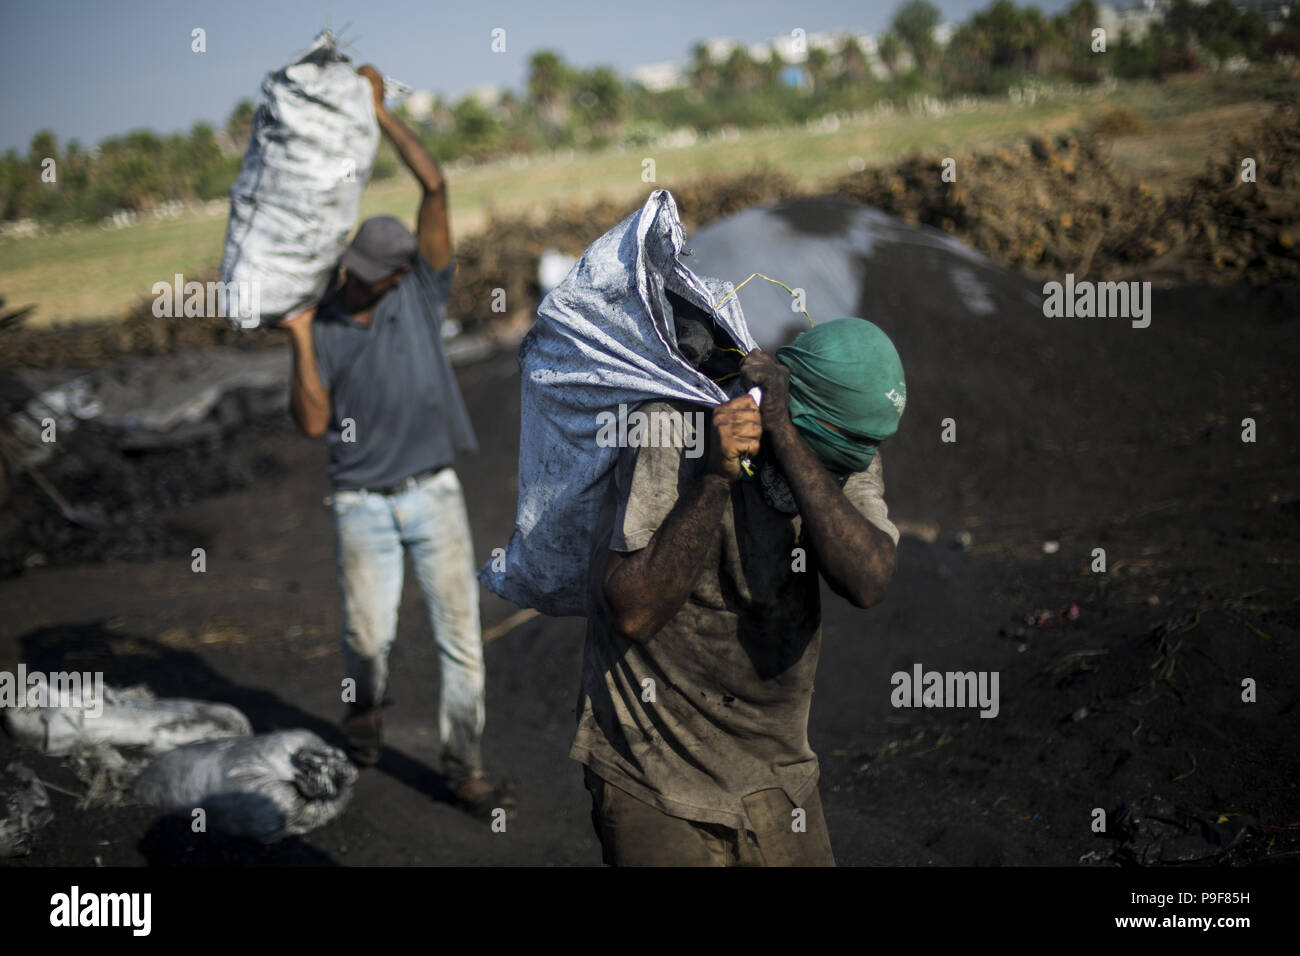 Luglio 18, 2018 - Gaza City, la striscia di Gaza, la Palestina - un palestinese il concessionario detiene un sacco di carbone dopo l'acquisto di esso al Hattab stabilimento di produzione, a est di Jabaliya Refugee Camp, nel nord della Striscia di Gaza City, nella Striscia di Gaza, il 18 luglio 2018. Hattab è il più grande produttore nella Striscia di Gaza. Cinque gli uomini lavorano tutto l'anno, soprattutto durante il periodo invernale e i periodi di vacanza quando la domanda di carbone è alta. Mentre i lavoratori tagliare diversi tipi di alberi, il legno viene utilizzato spesso per rendere il carbone. Albero di agrume è molto utile e costoso, ma Habash i lavoratori non installarlo su questo tipo solo e trattare con dispon Foto Stock